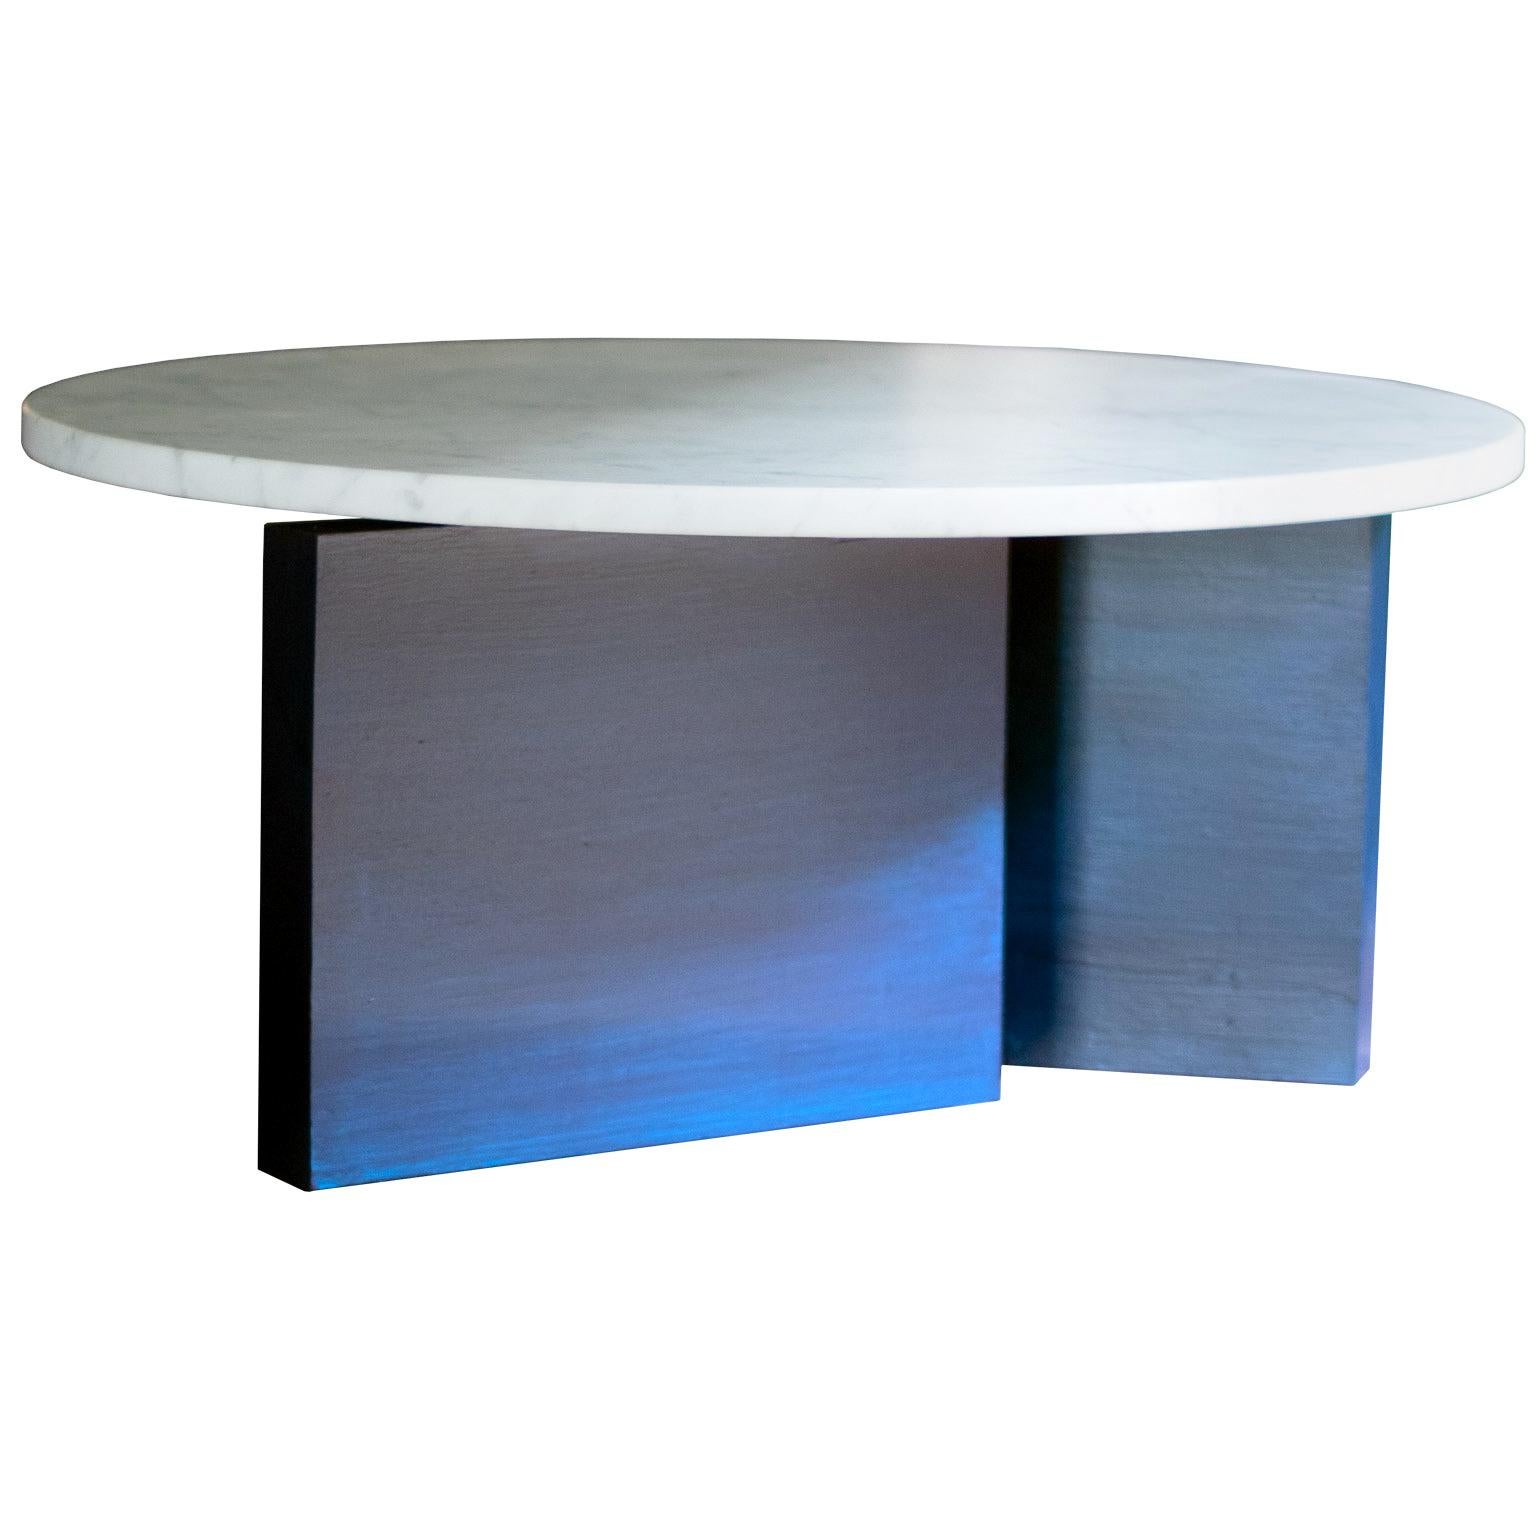 Table d'appoint ronde en marbre blanc de Carrare avec base émaillée bleue à l'encre Dietrich